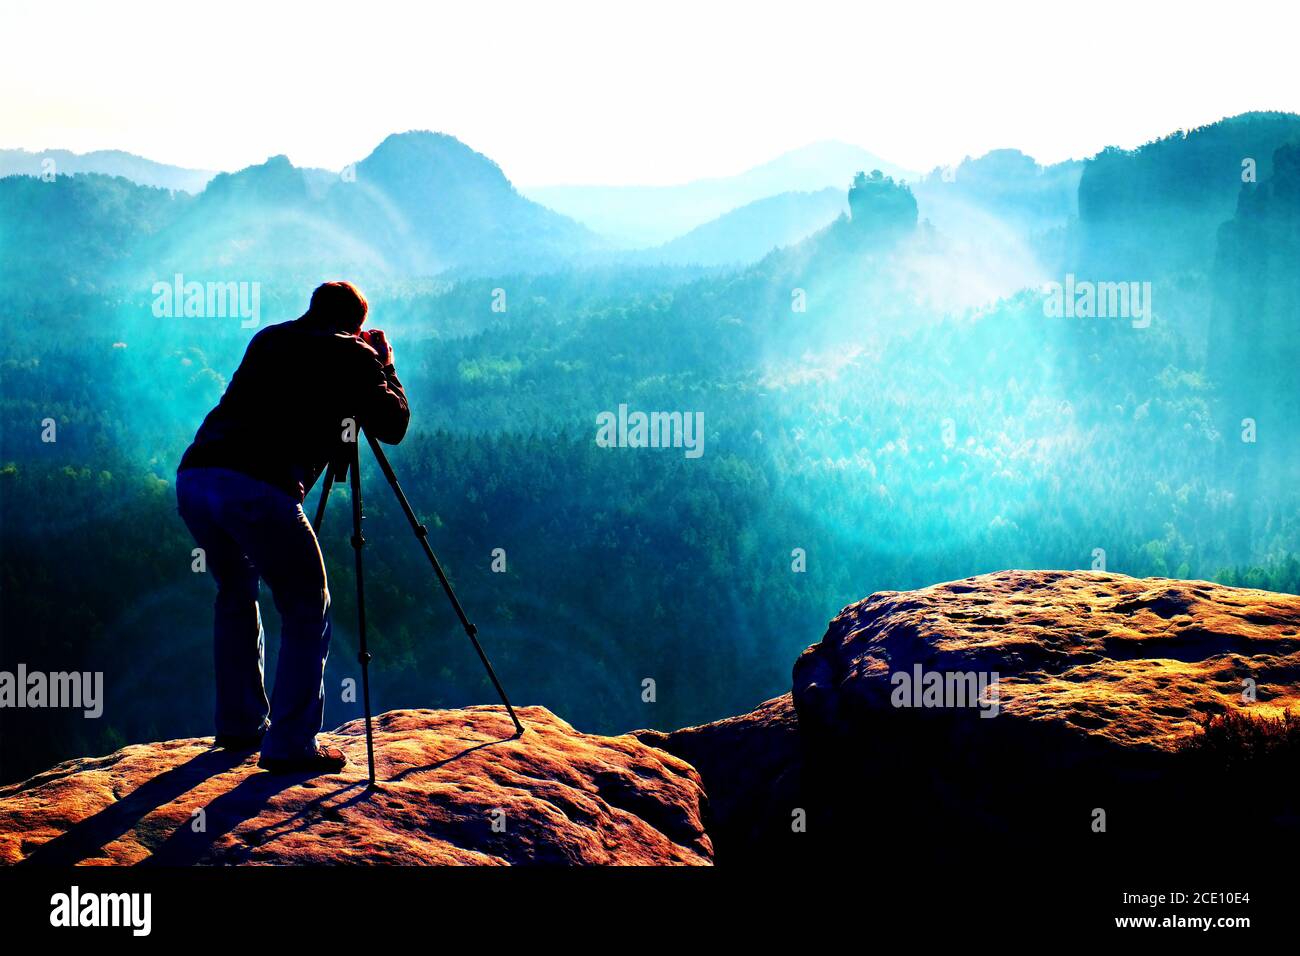 Film grain. Professional on cliff. Nature photographer takes photos with mirror camera on mountaiin peak Stock Photo